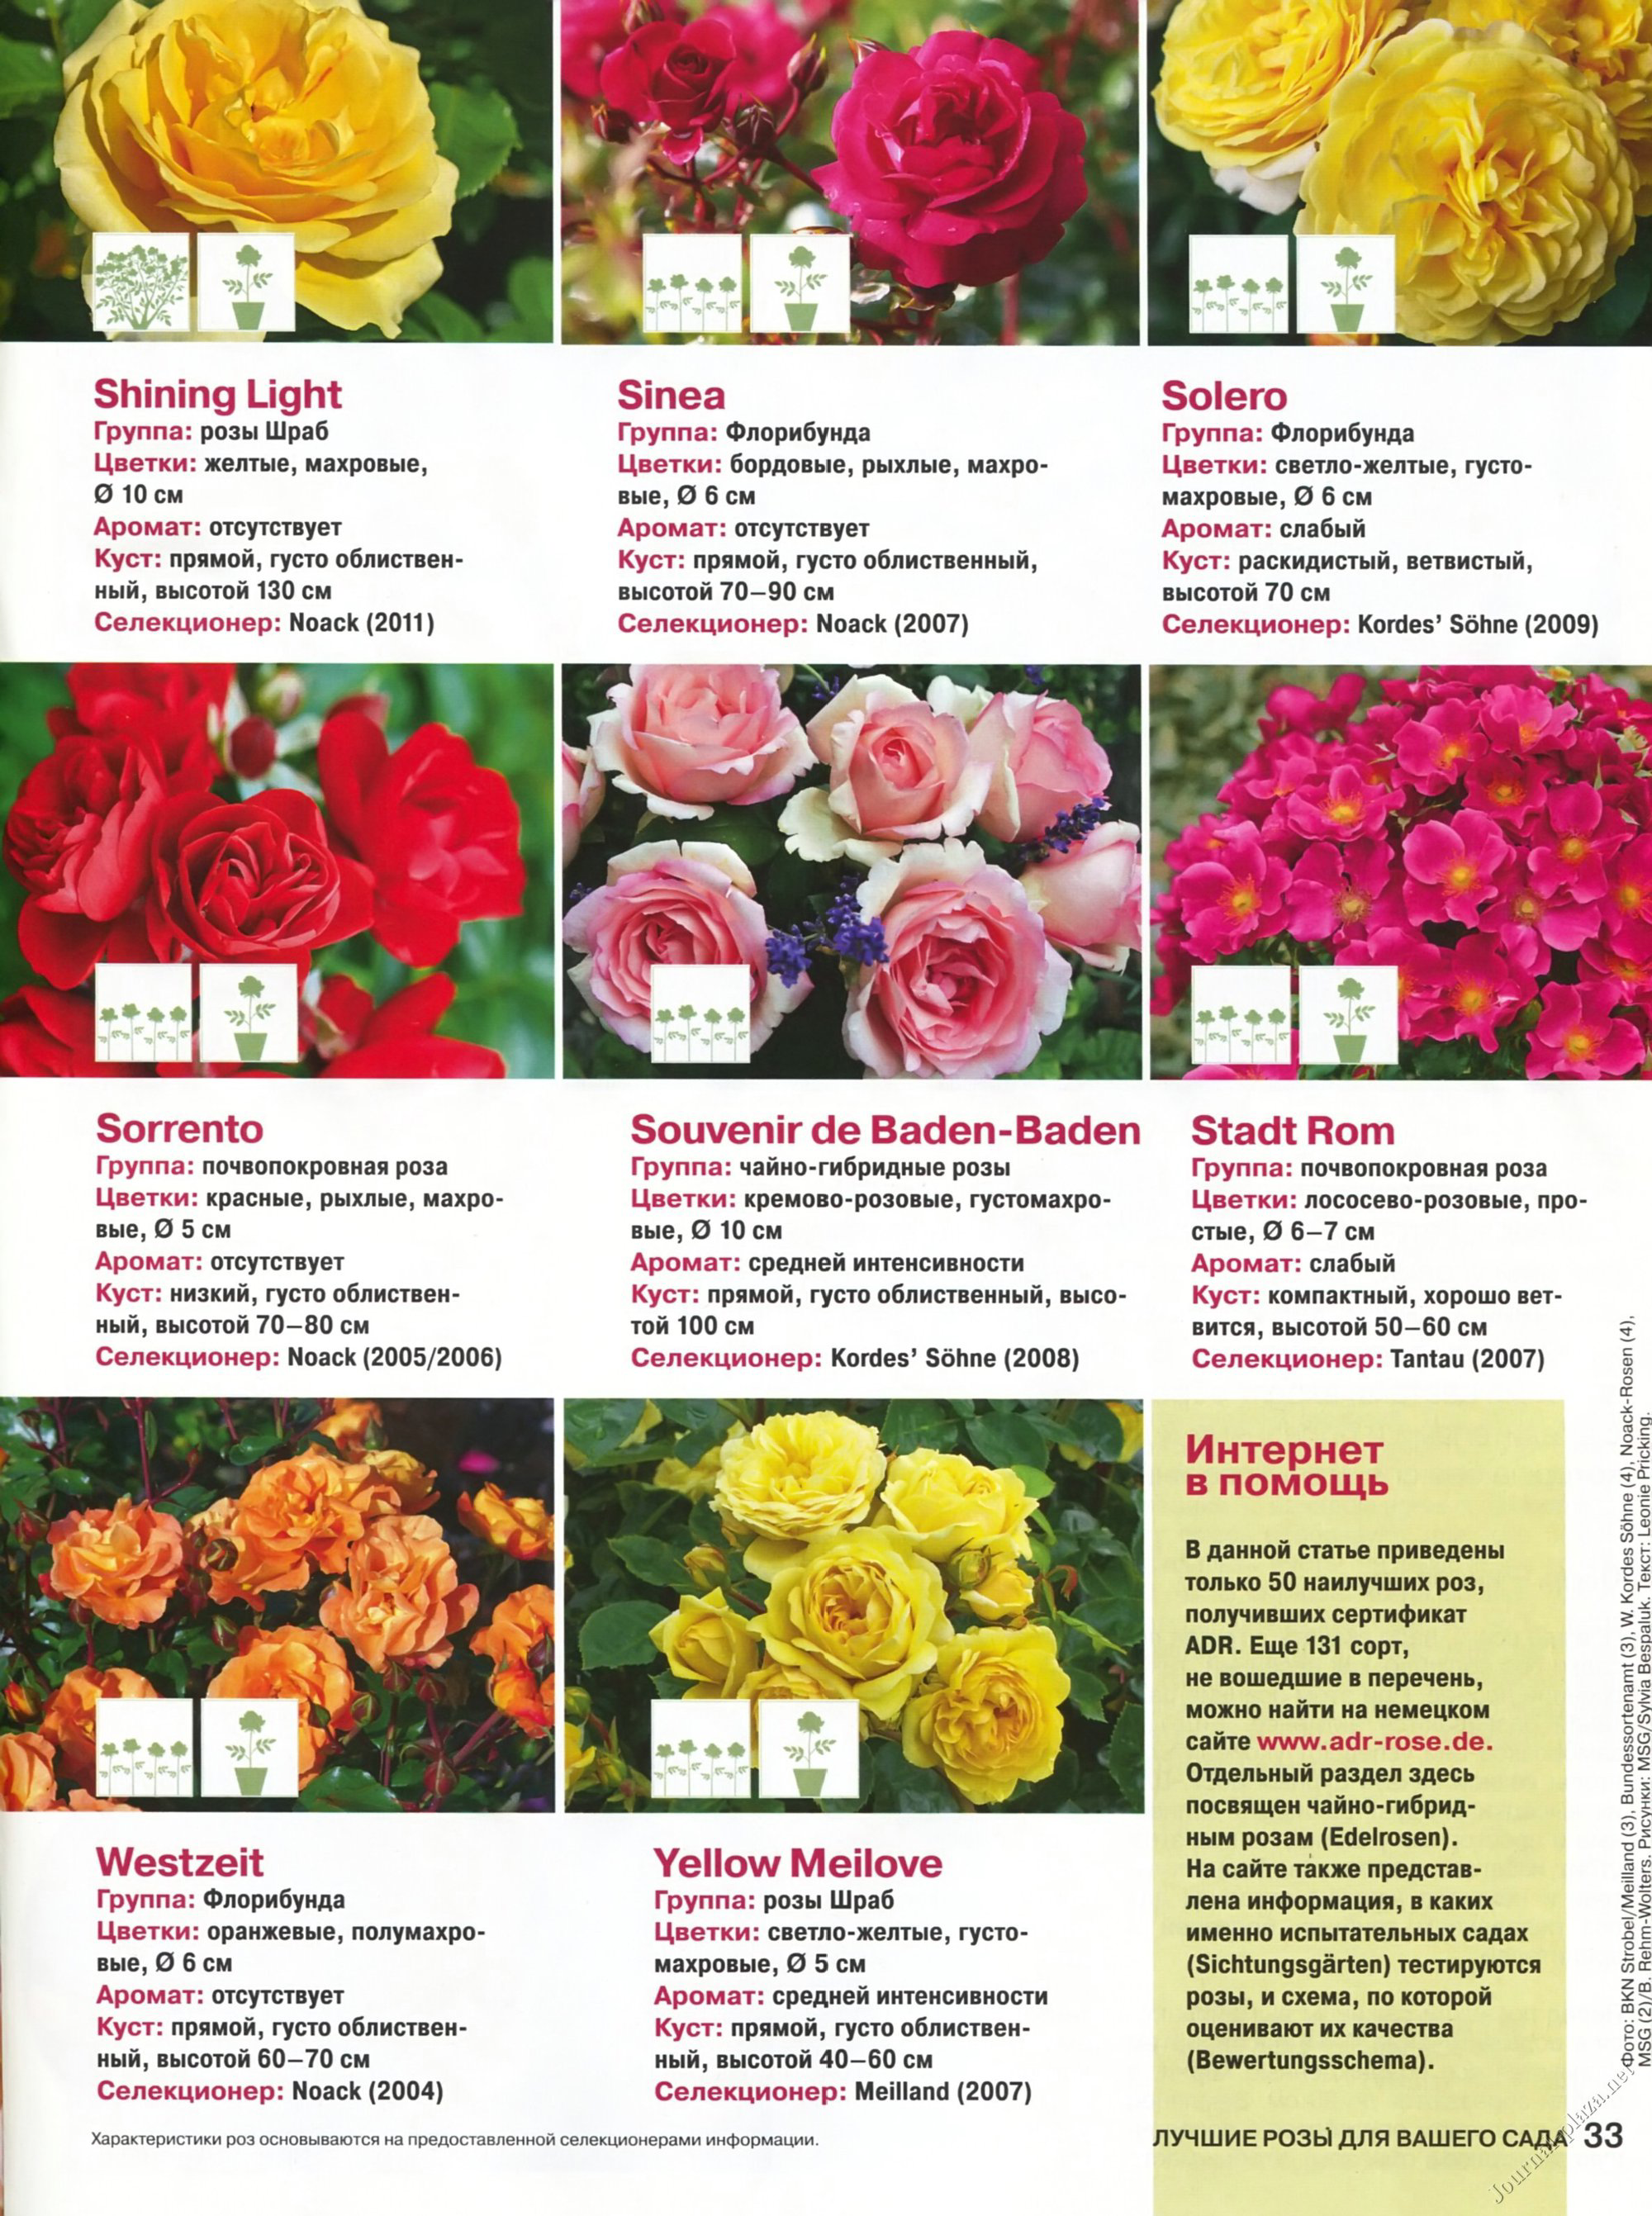 Сорта роз с фото и описанием каталог на русском